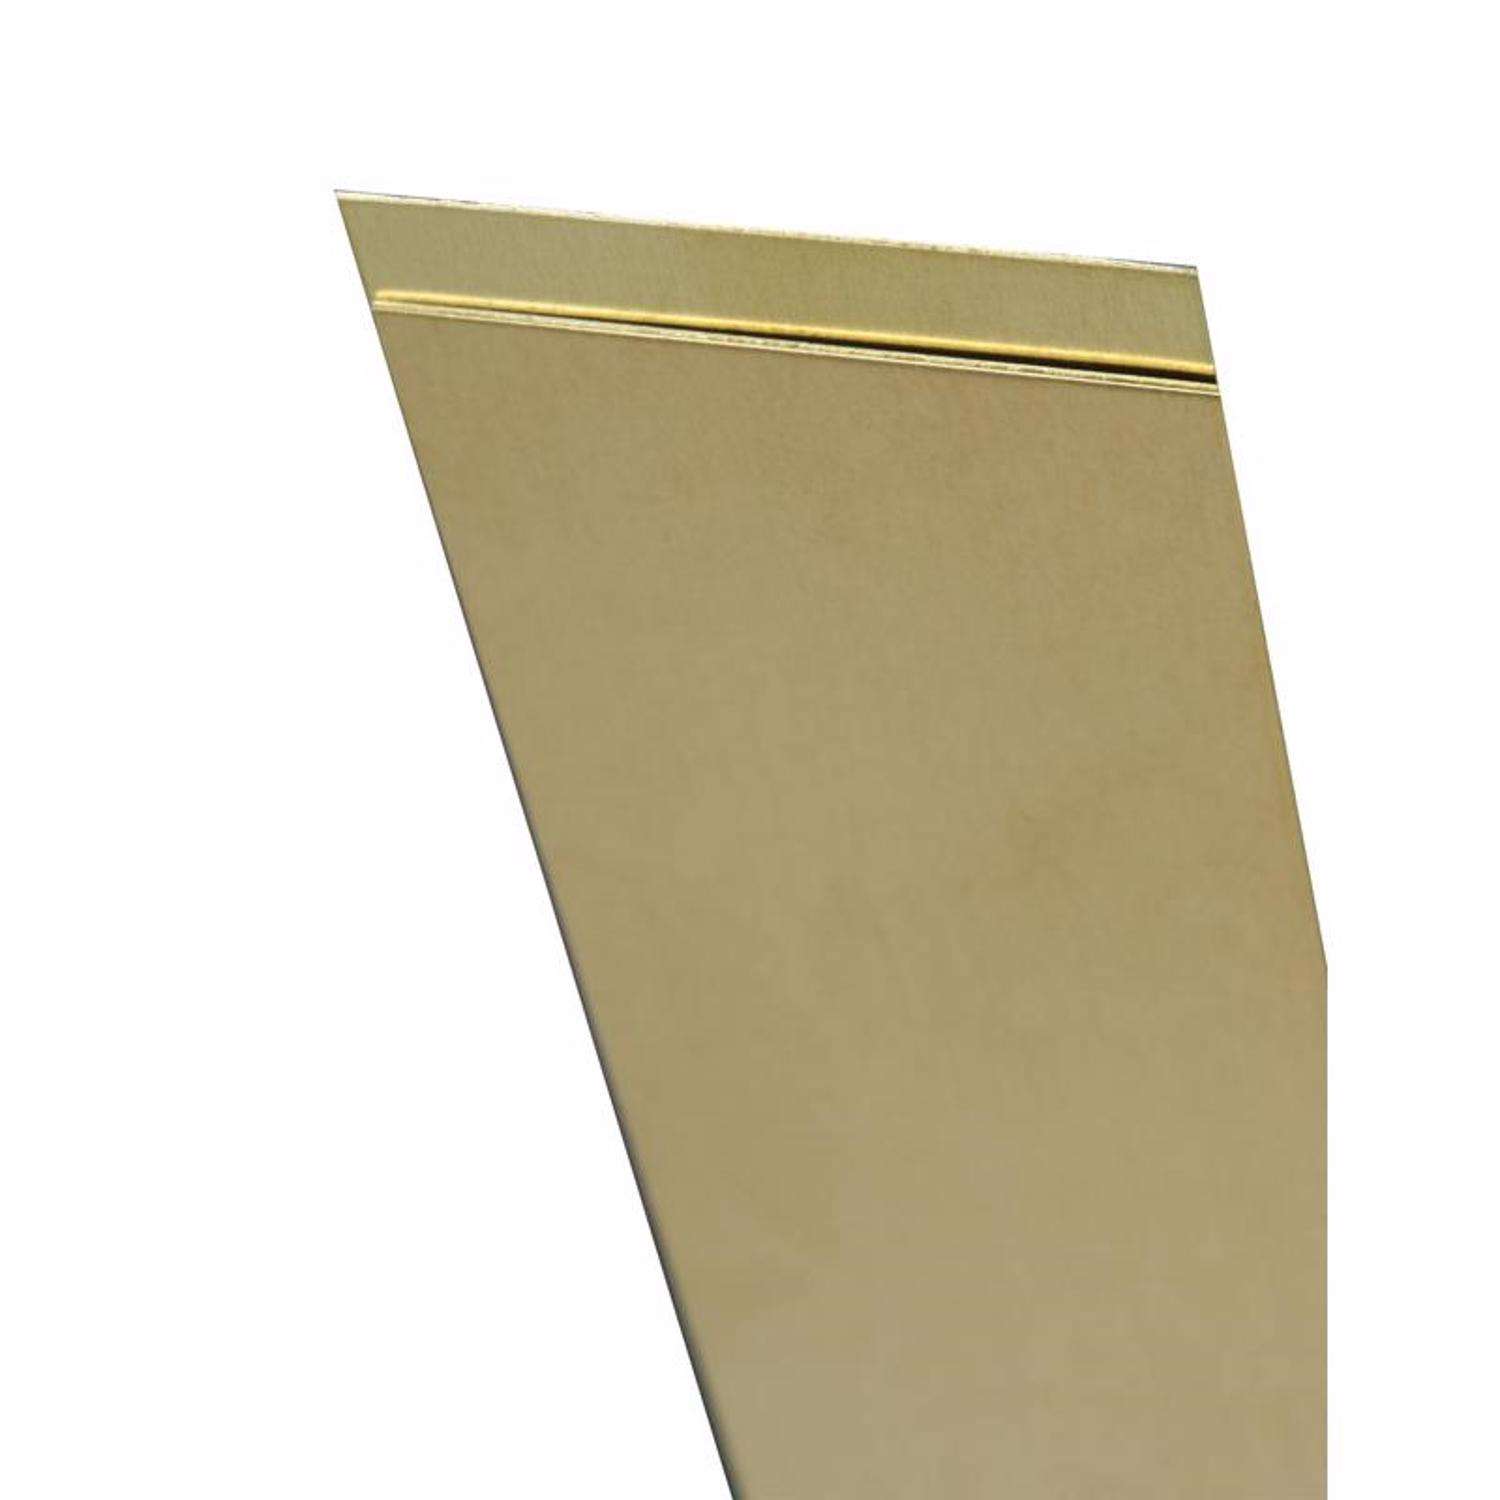 K&S 8248 Brass Strip, 0.064 x 1